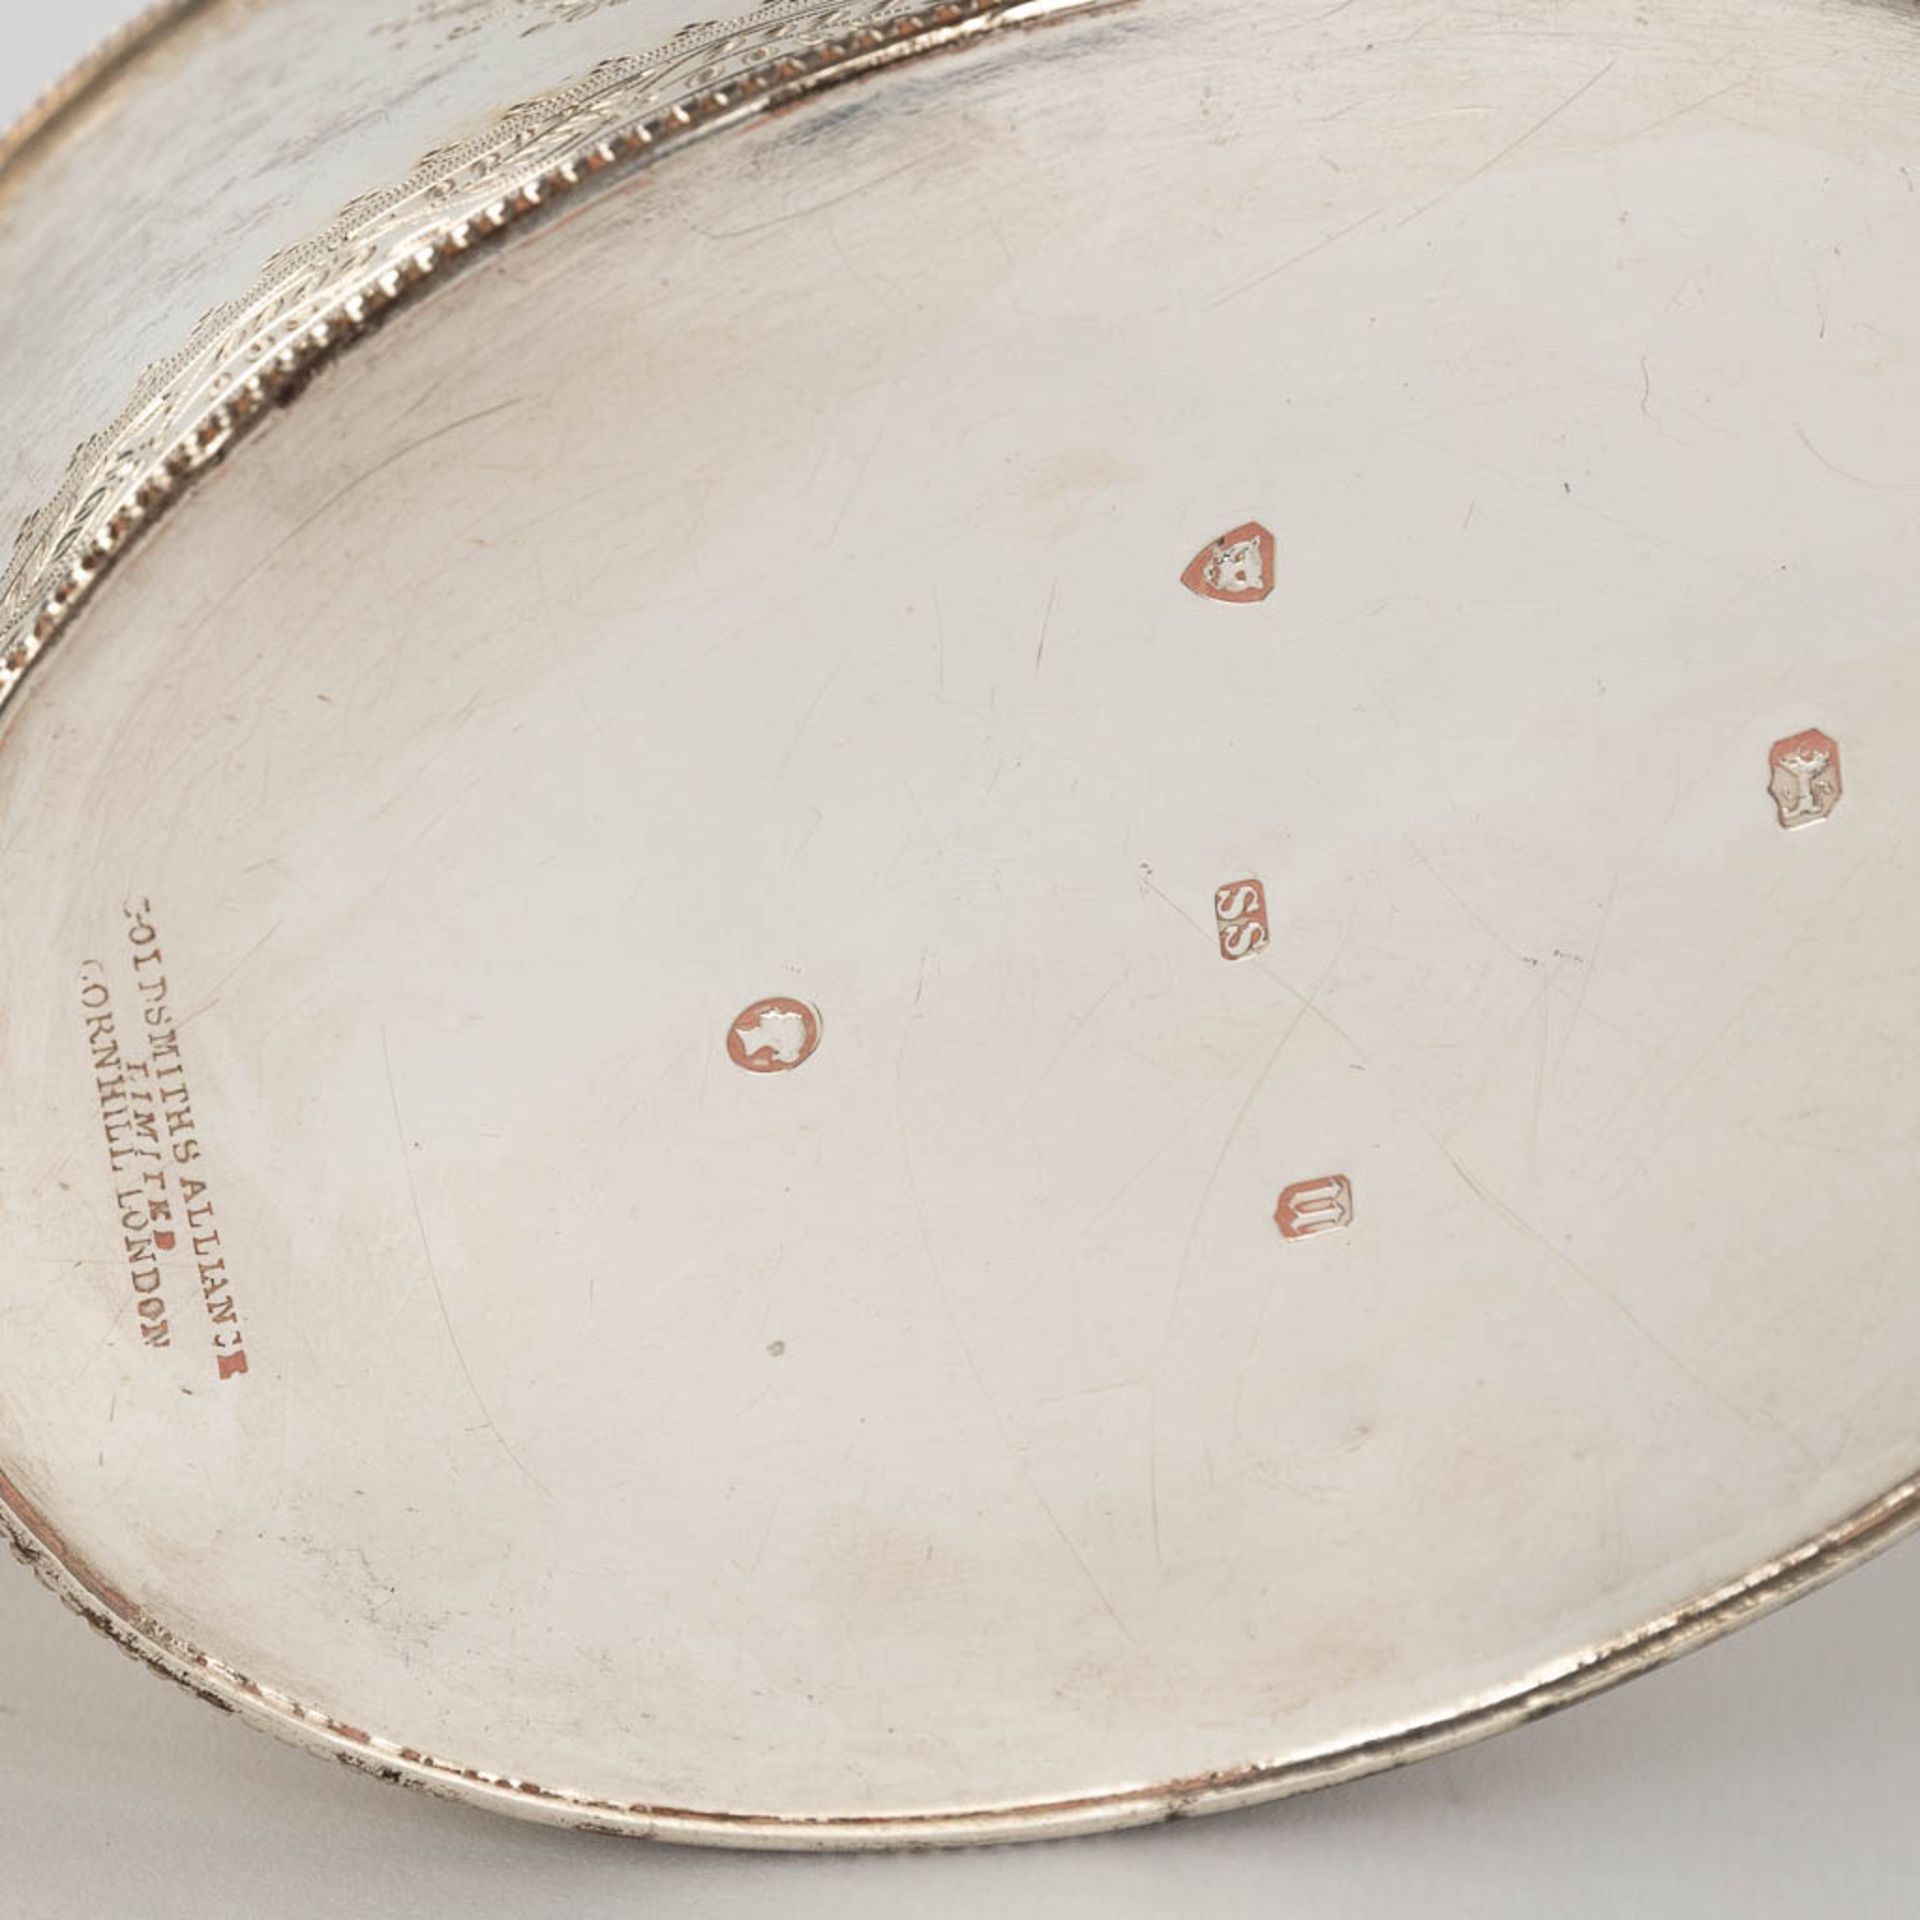 An antique tea pot, silver, London, 19th century. 520g. (L: 10 x W: 26 x H: 13 cm) - Image 9 of 14